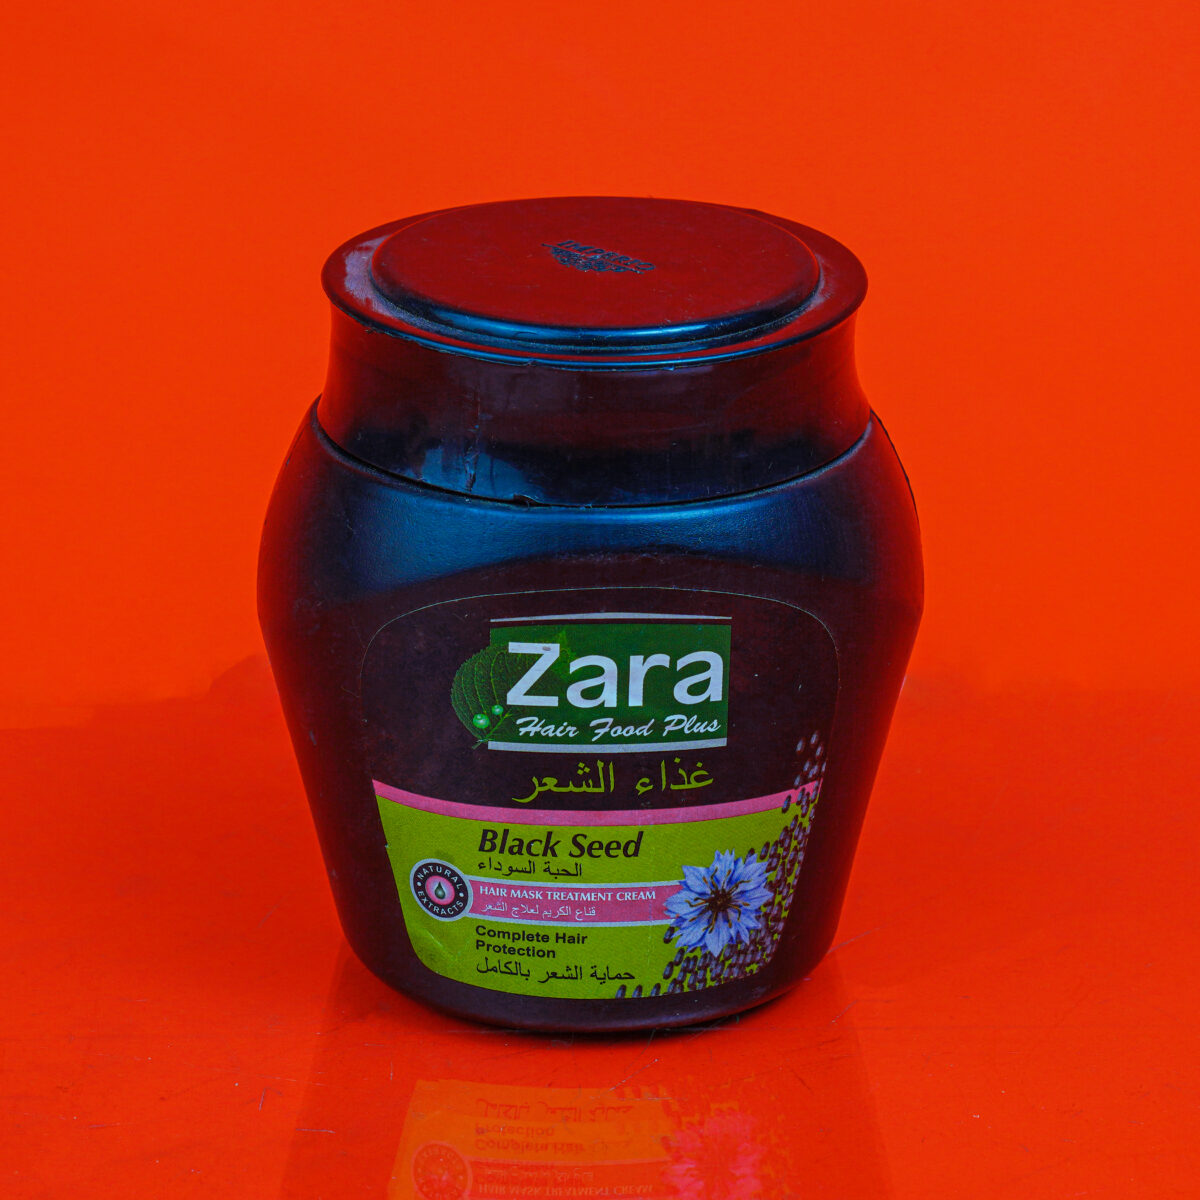 Zara Hair Food Plus Black Seed Hair Mask Treatment Cream 380g